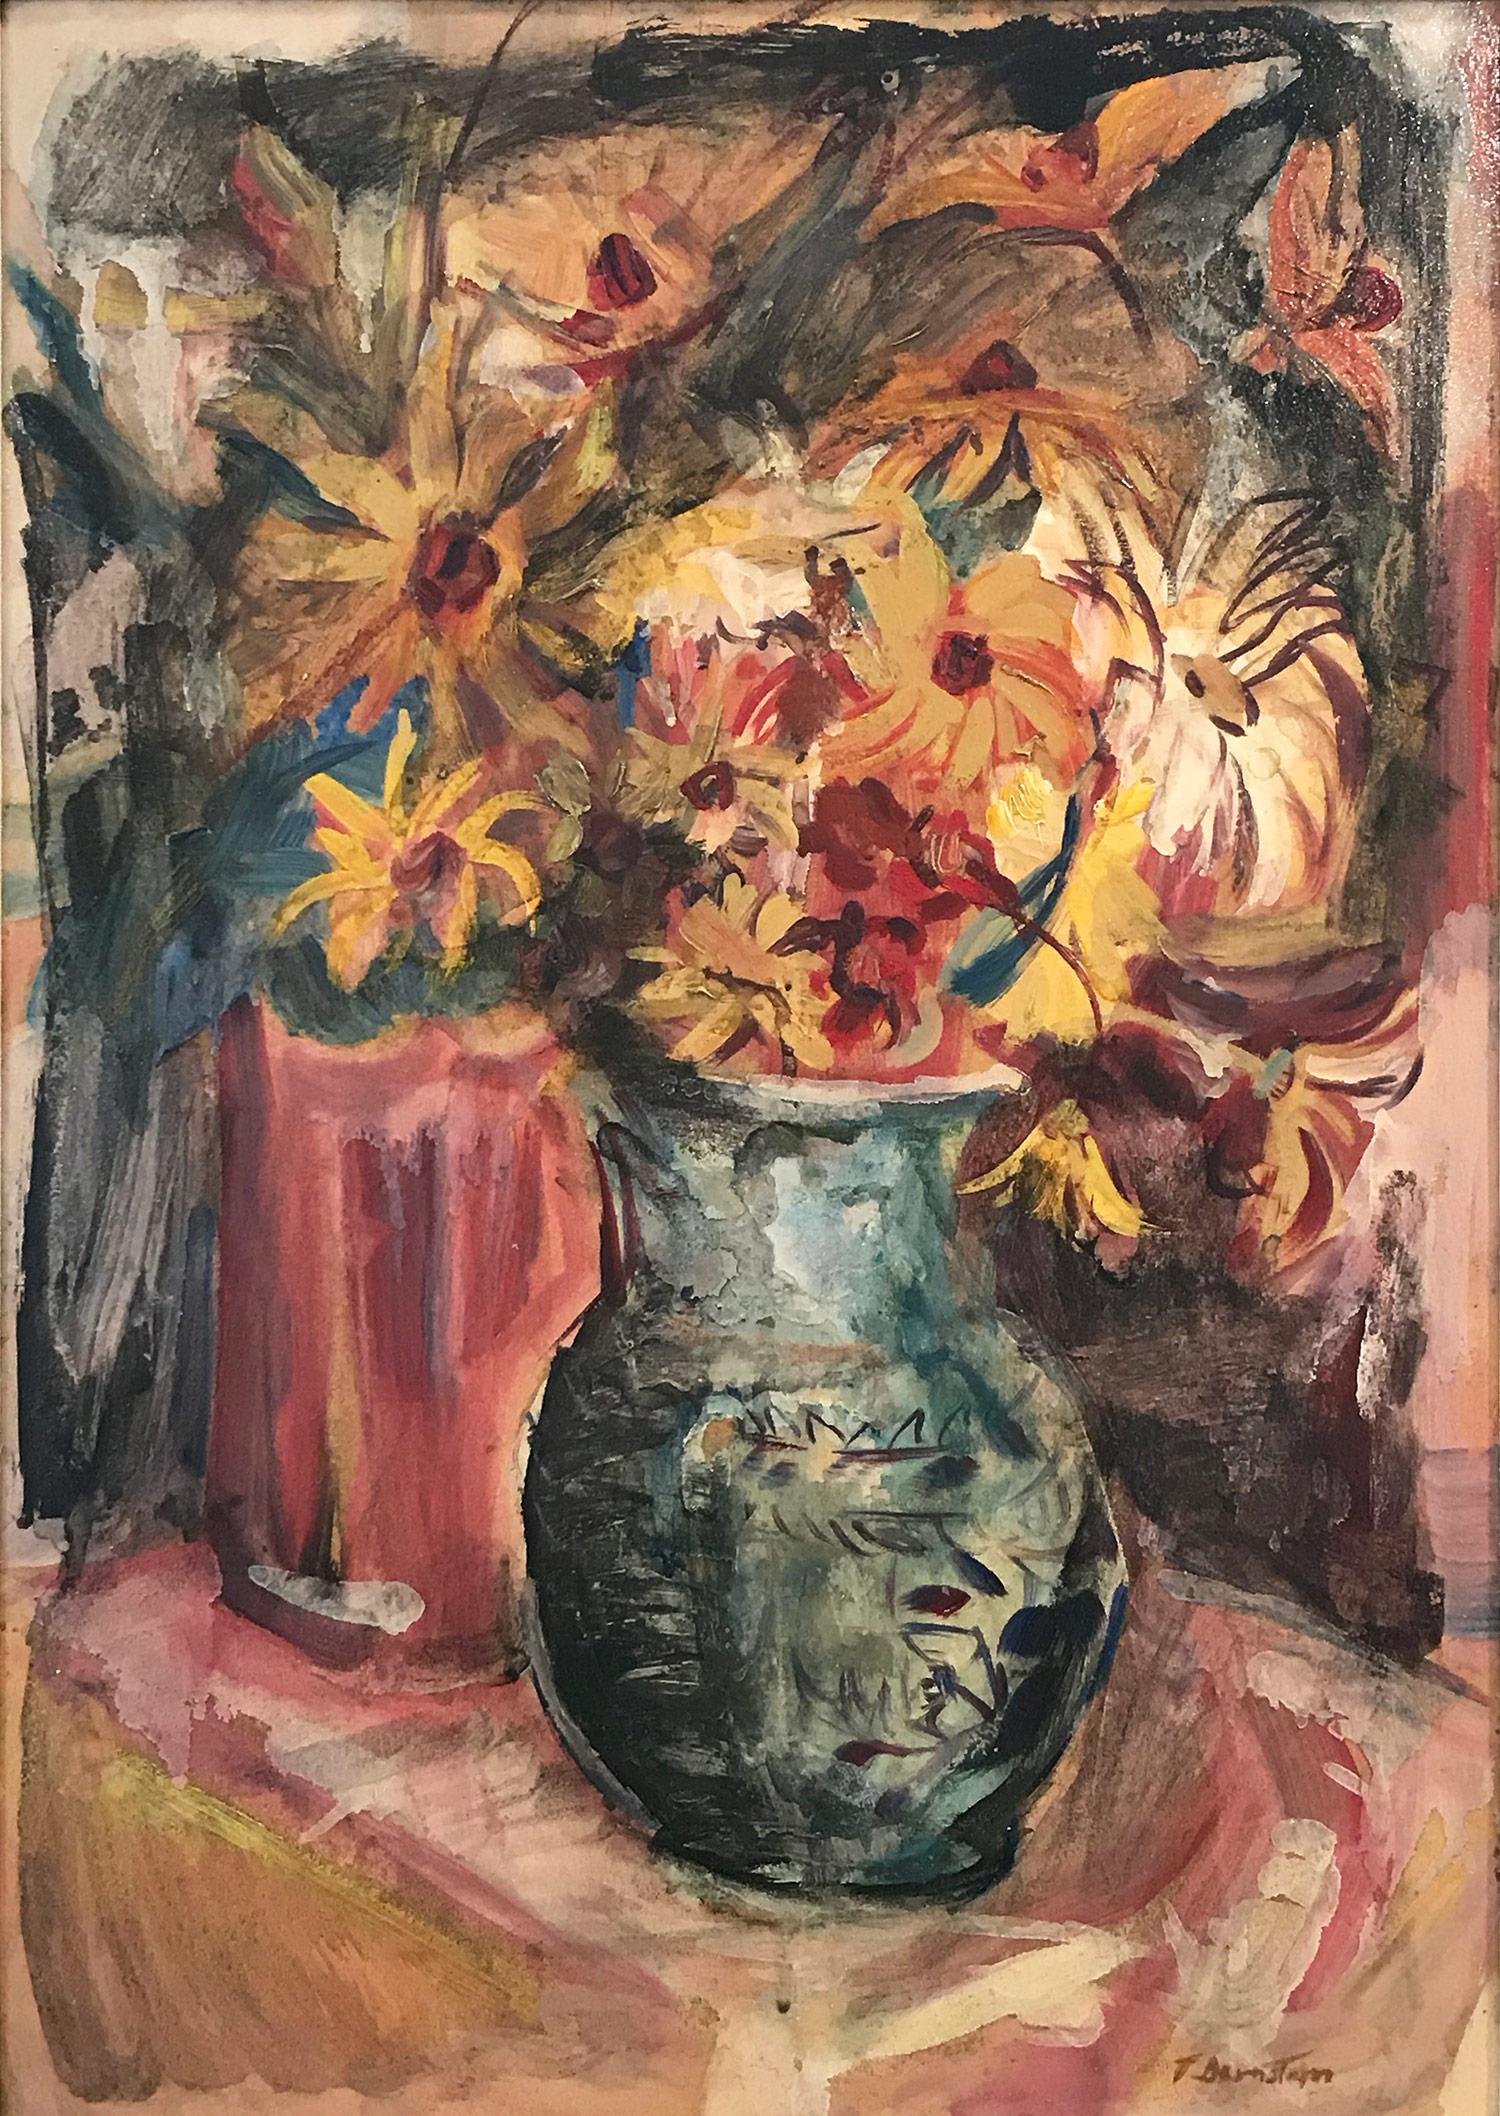 Peinture à l'huile polonaise du 20e siècle « Still Life, Flowers From My Garden » (La vie morte, fleurs de mon jardin) - Painting de Theresa Bernstein